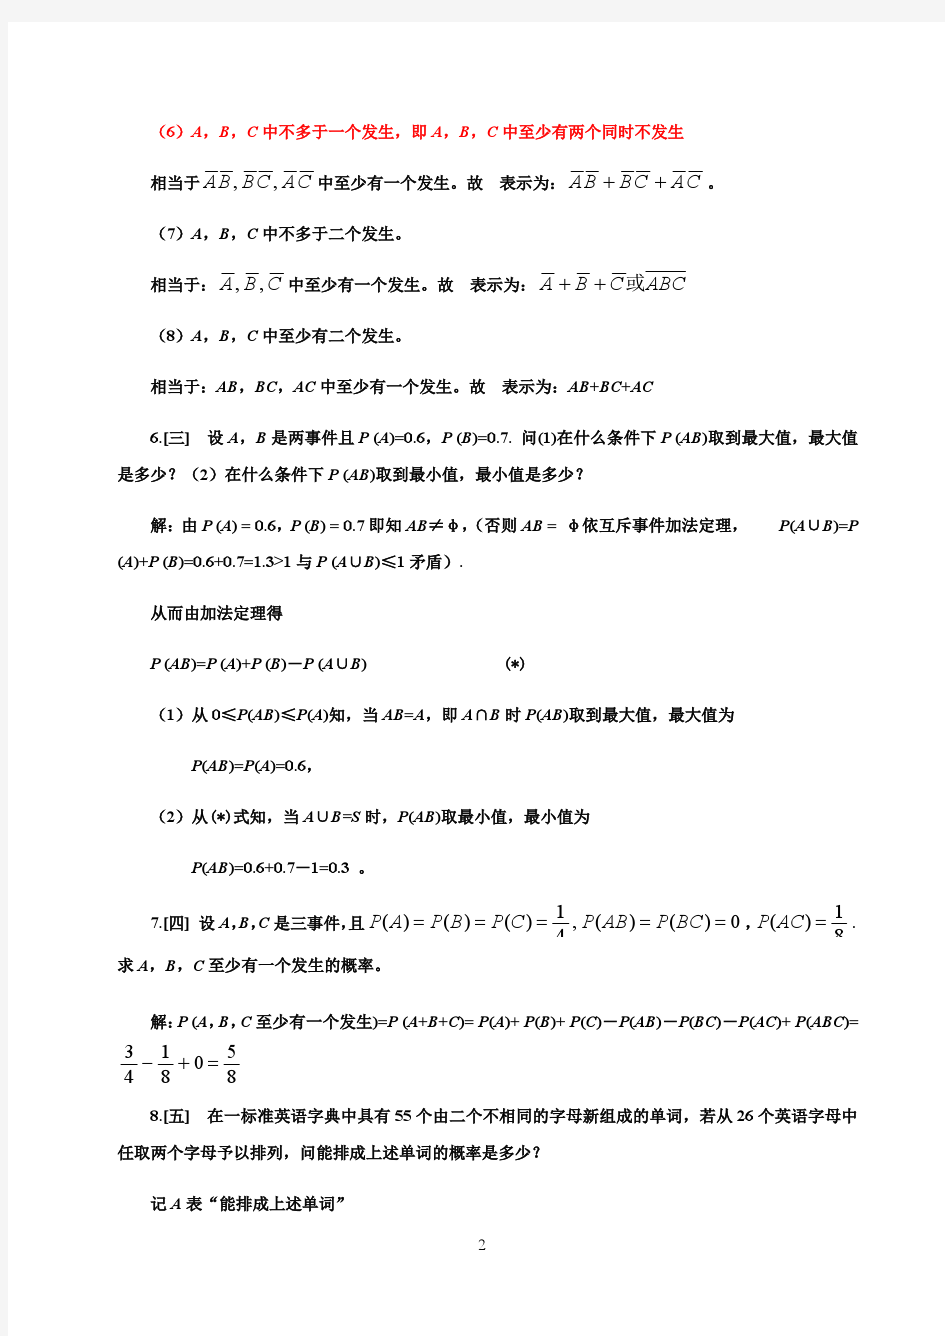 概率论与数理统计第四版_习题答案_第四版_盛骤__浙江大学